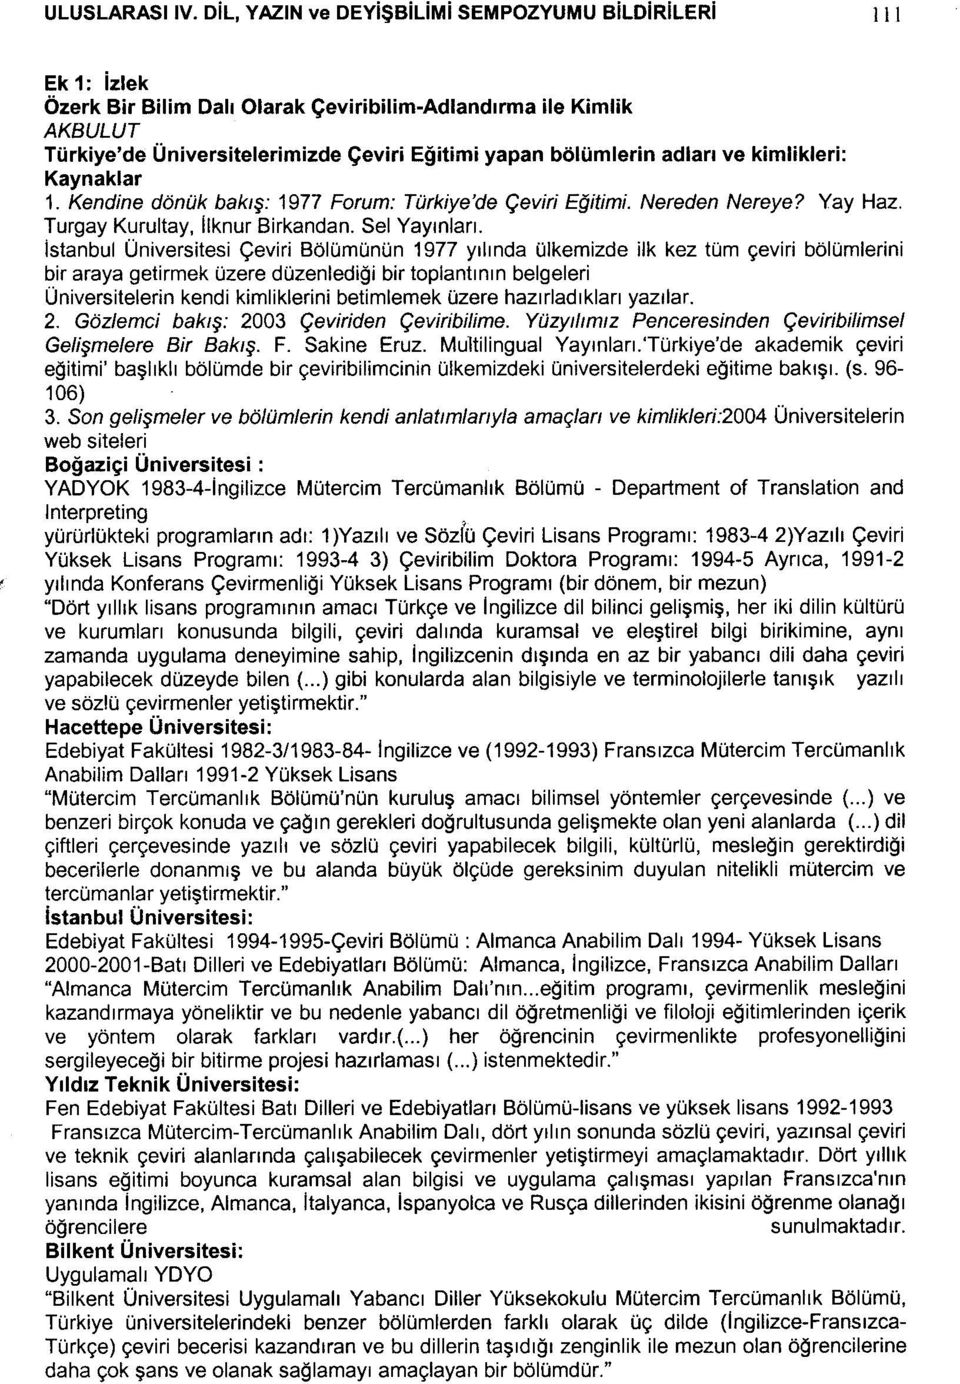 adları ve kimlikleri: Kaynaklar 1. Kendine dönük bakış: 1977 Forum: Türkiye'de Çeviri Eğitimi. Nereden Nereye? Yay Haz. Turgay Kurultay, ılknur Birkandan. Sel Yayınları.